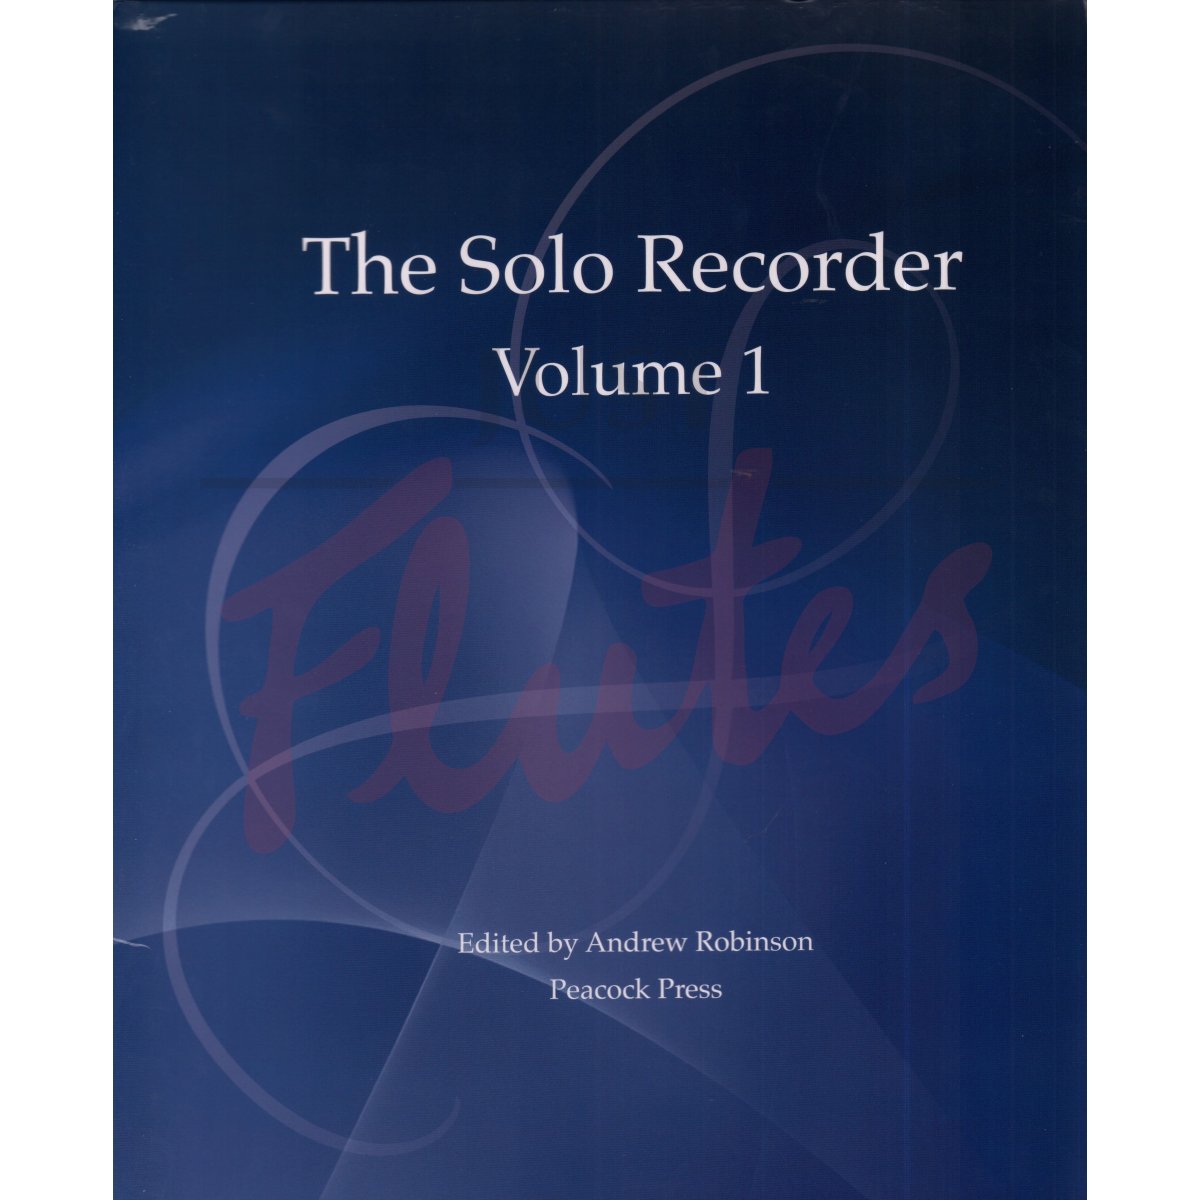 The Solo Recorder Volume 1